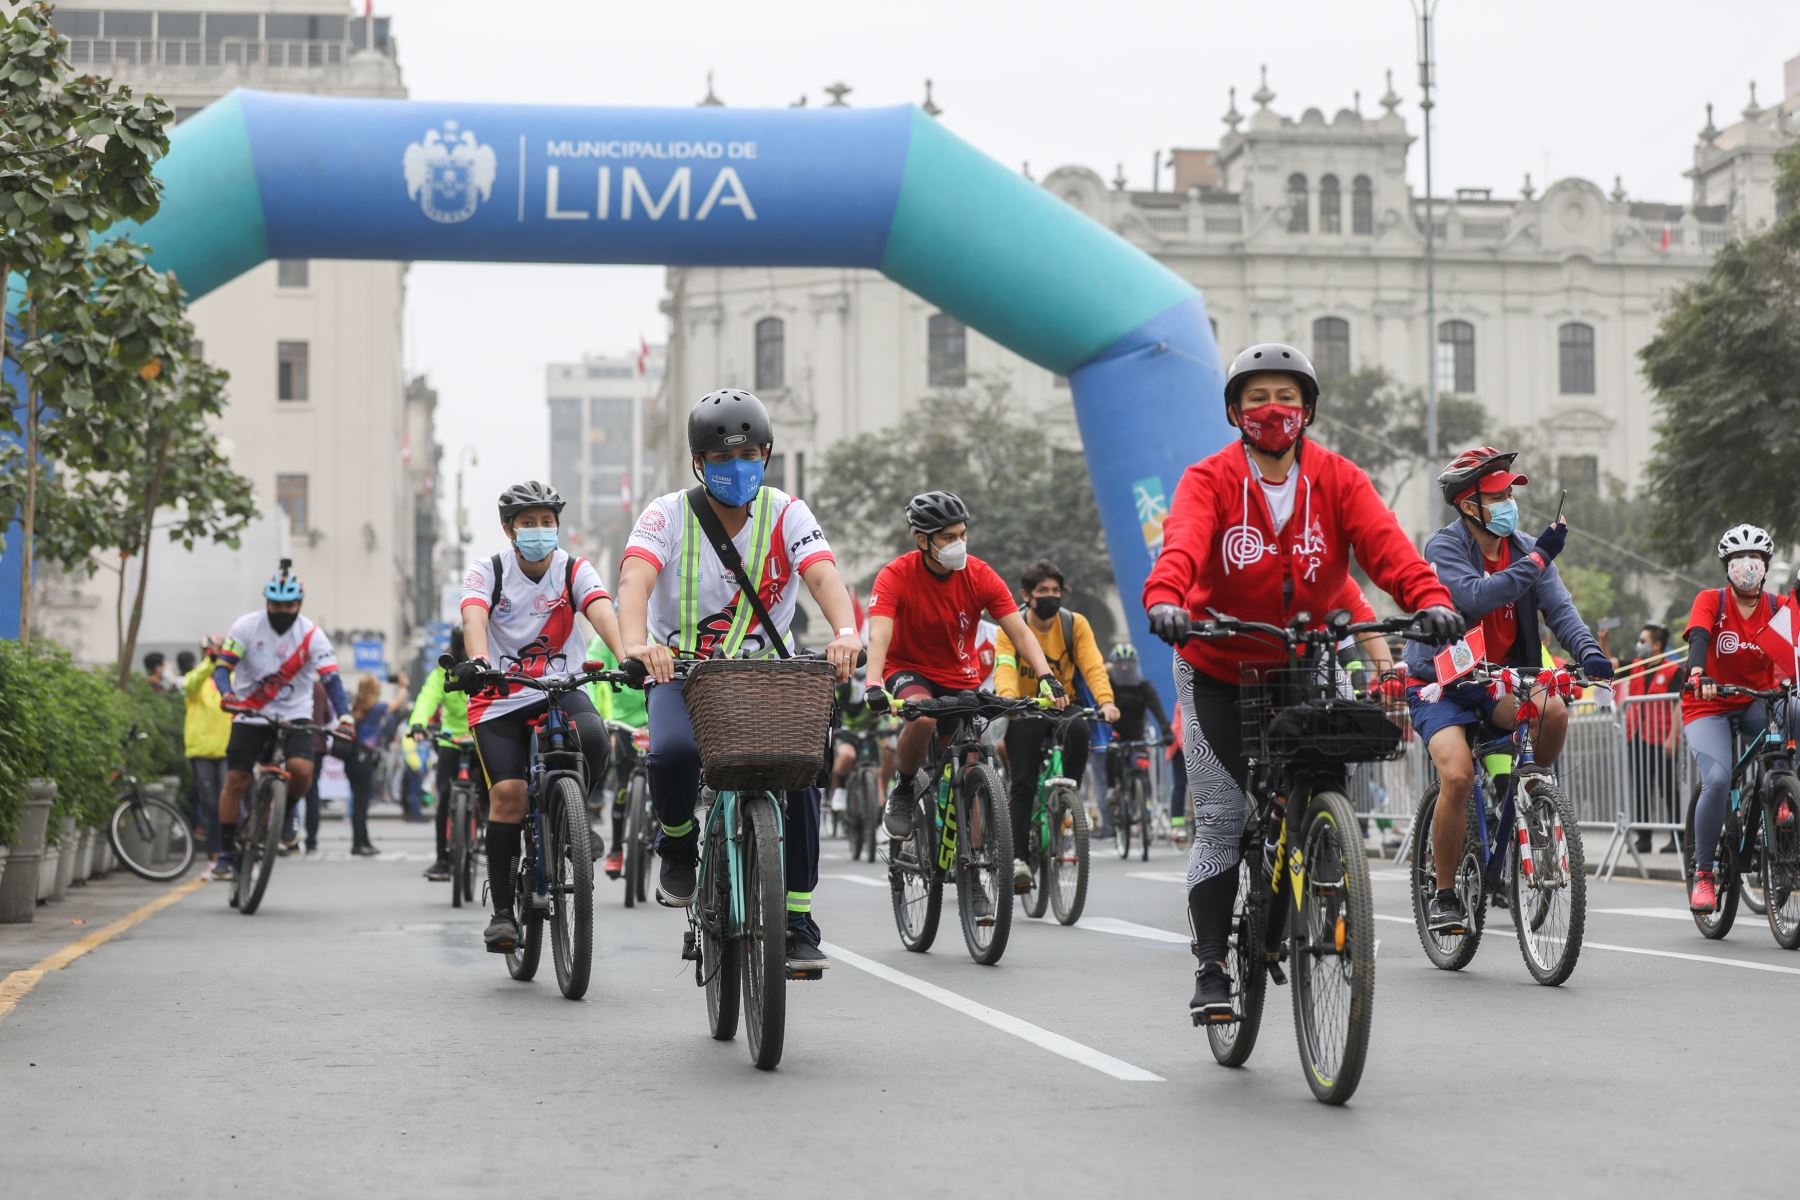 Municipalidad de Lima organiza bicicleteada "Pedaleando por el Bicentenario del Perú”. Esta actividad se realiza en simultáneo en varias ciudades del país e incluye un recorrido ciclístico de 25 km en cada lugar. Foto: ANDINA/Municipalidad de Lima